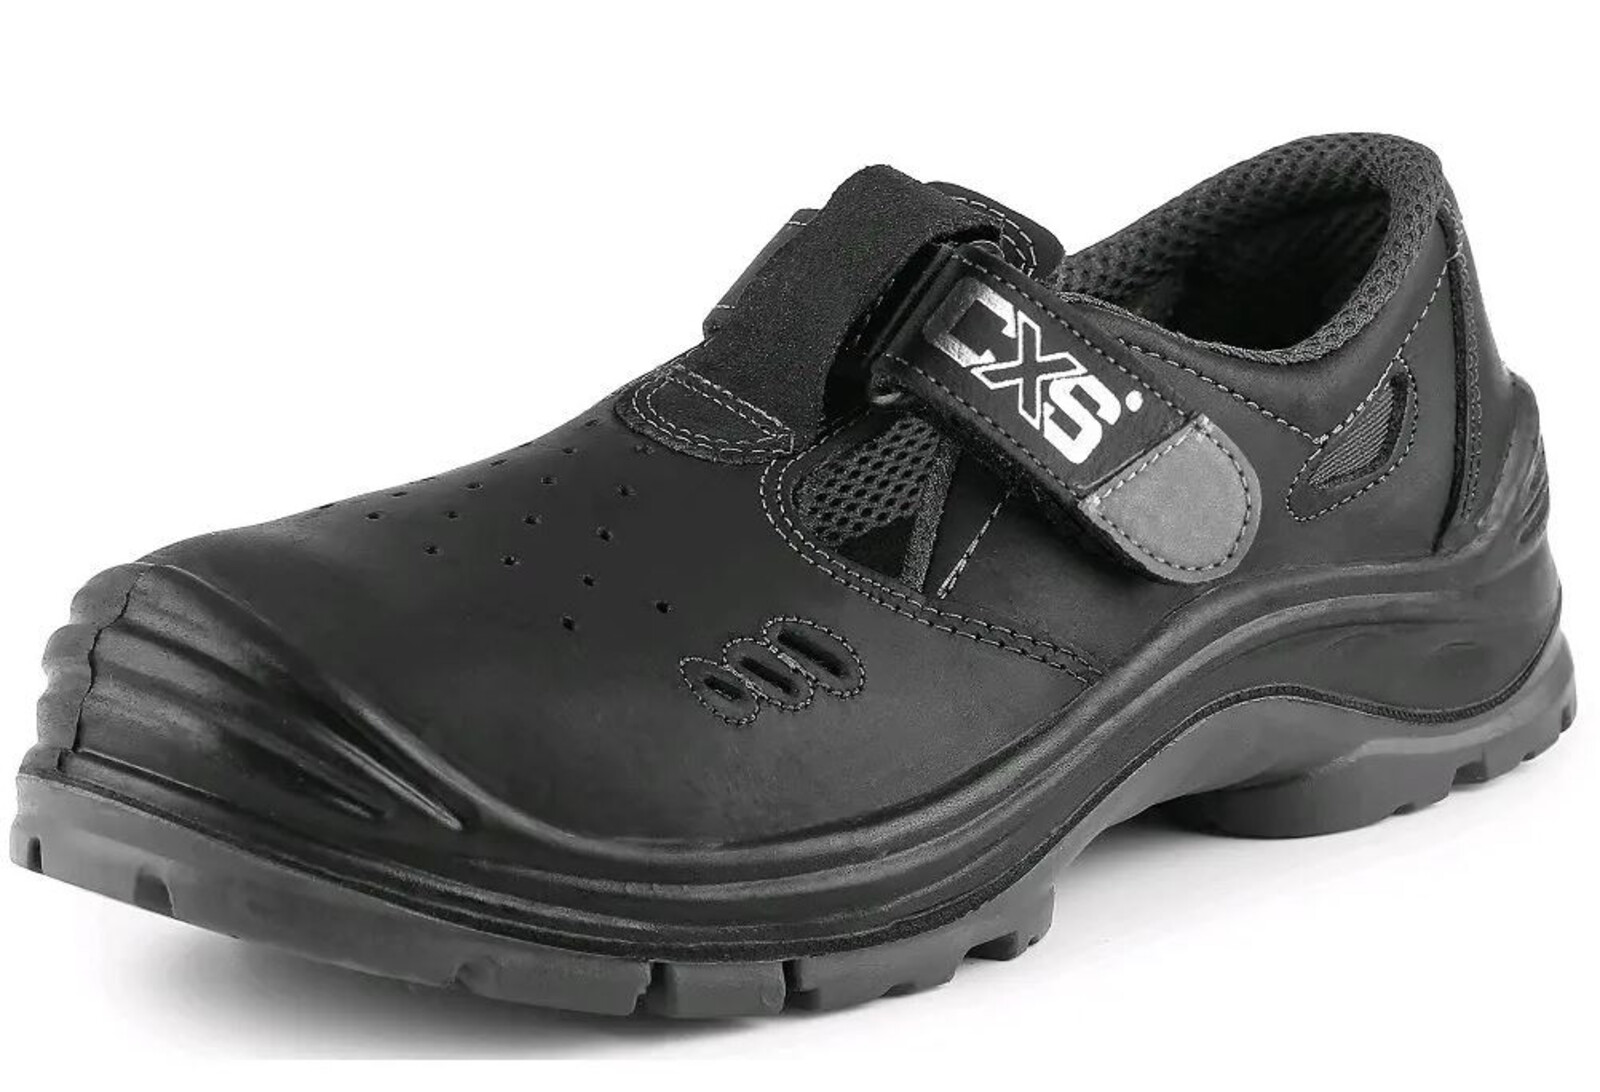 Bezpečnostné sandále CXS Safety Steel Iron S1 - veľkosť: 40, farba: čierna